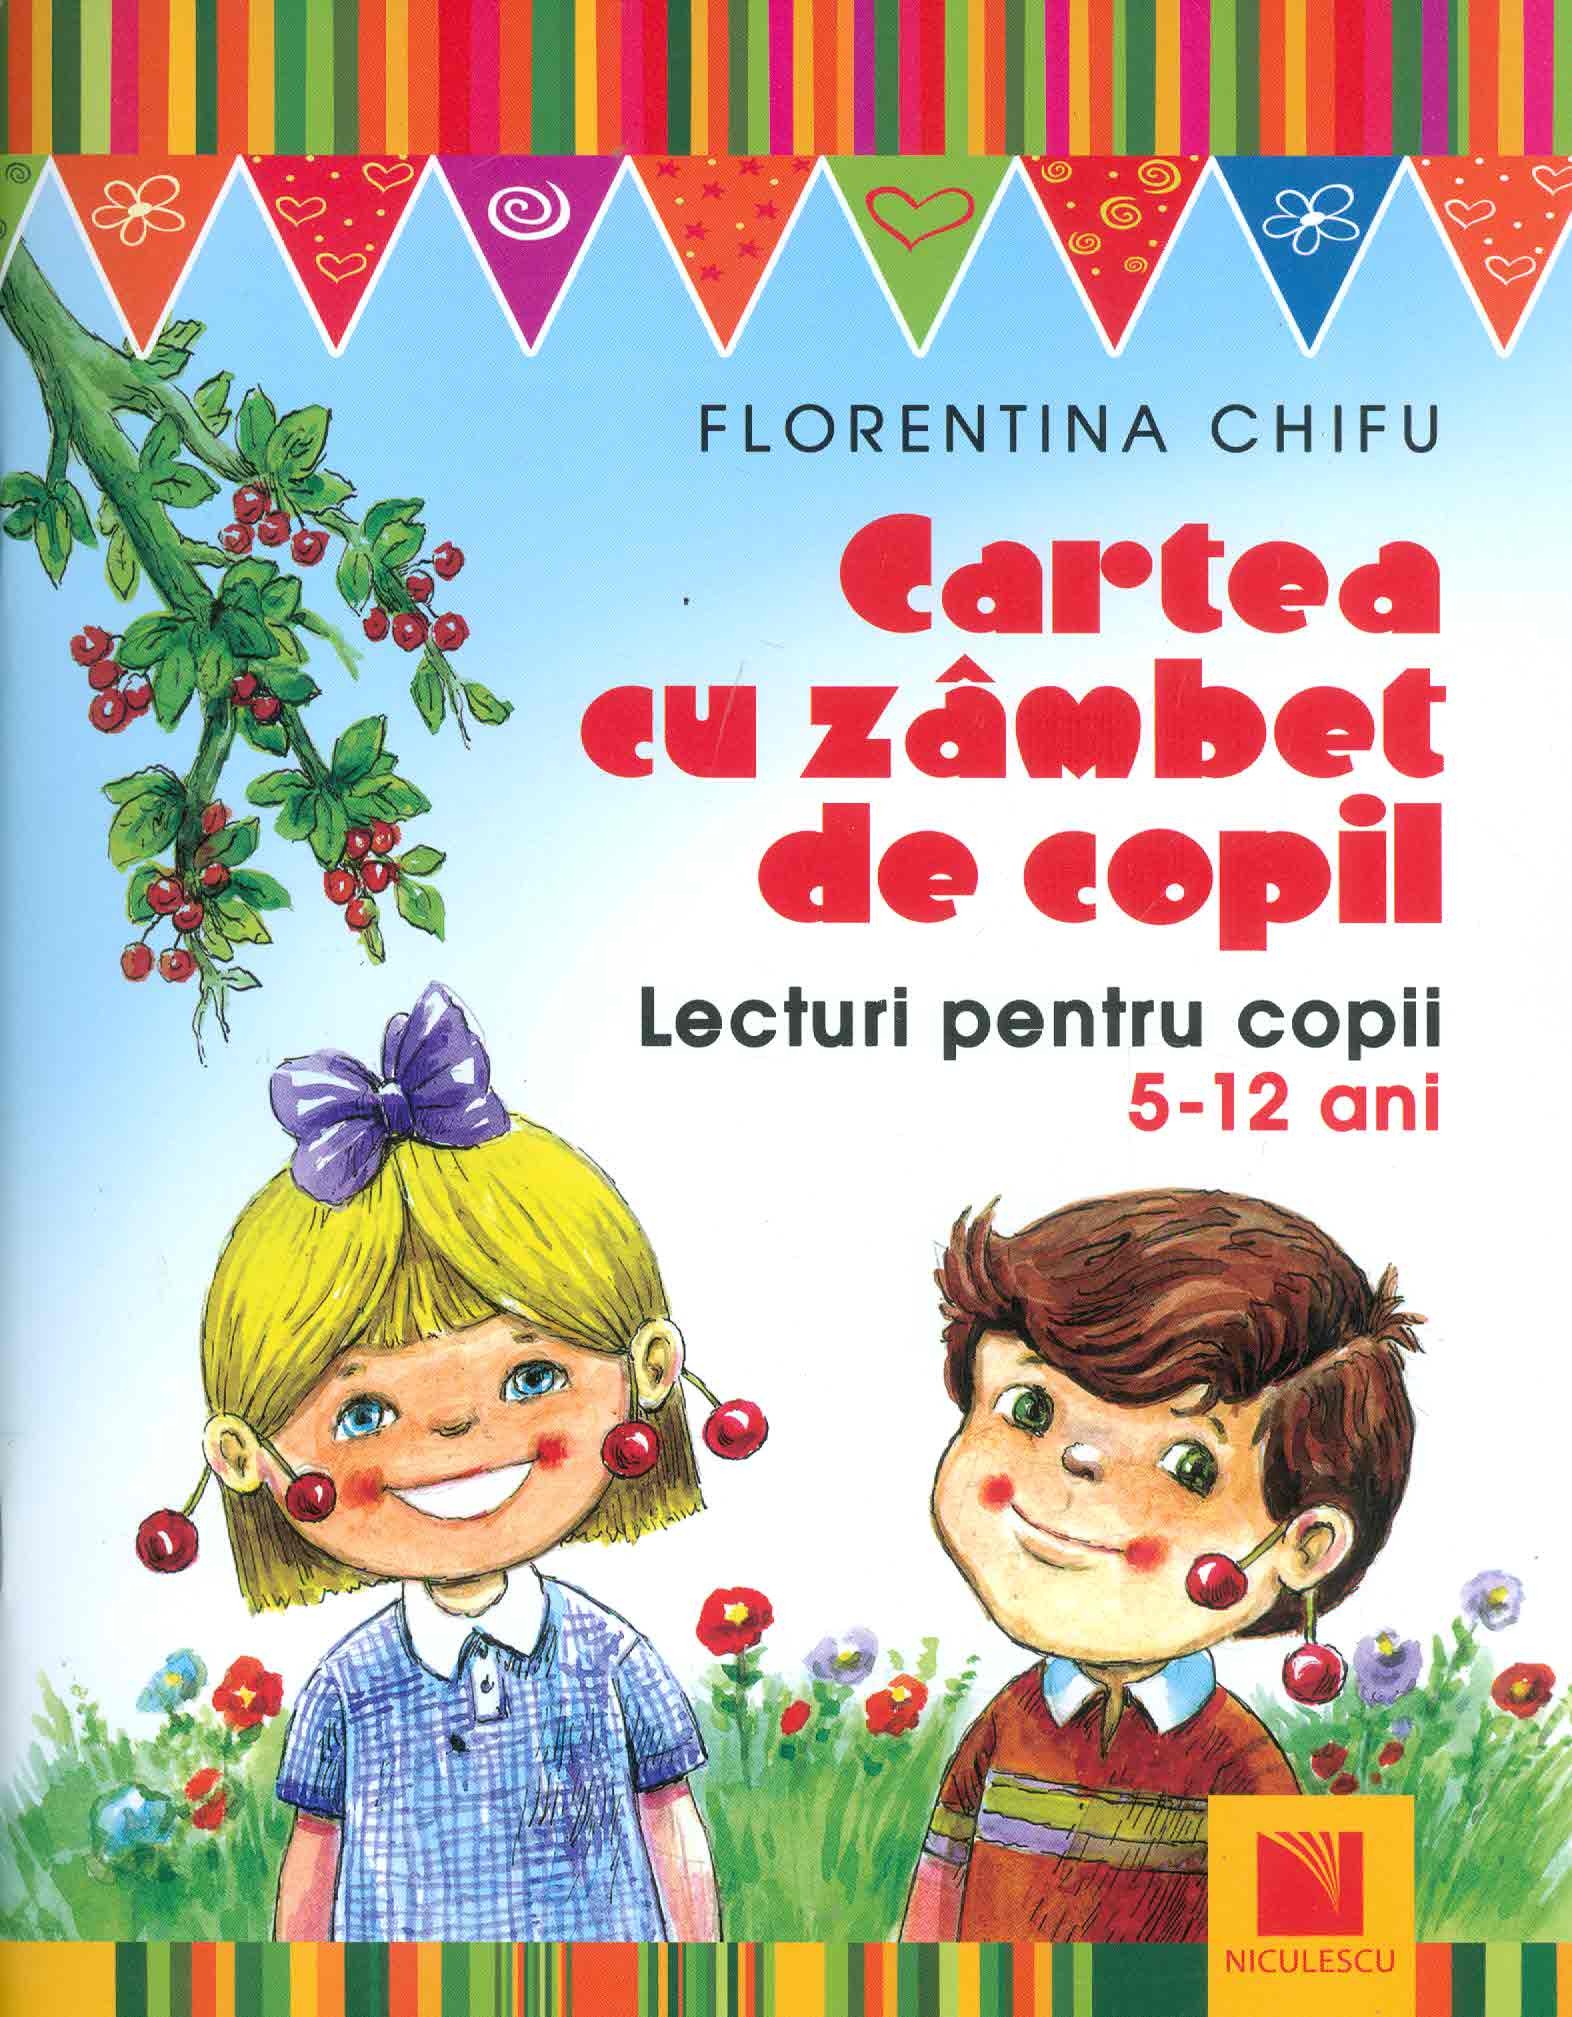 Cartea cu zambet de copil - Florentina Chifu